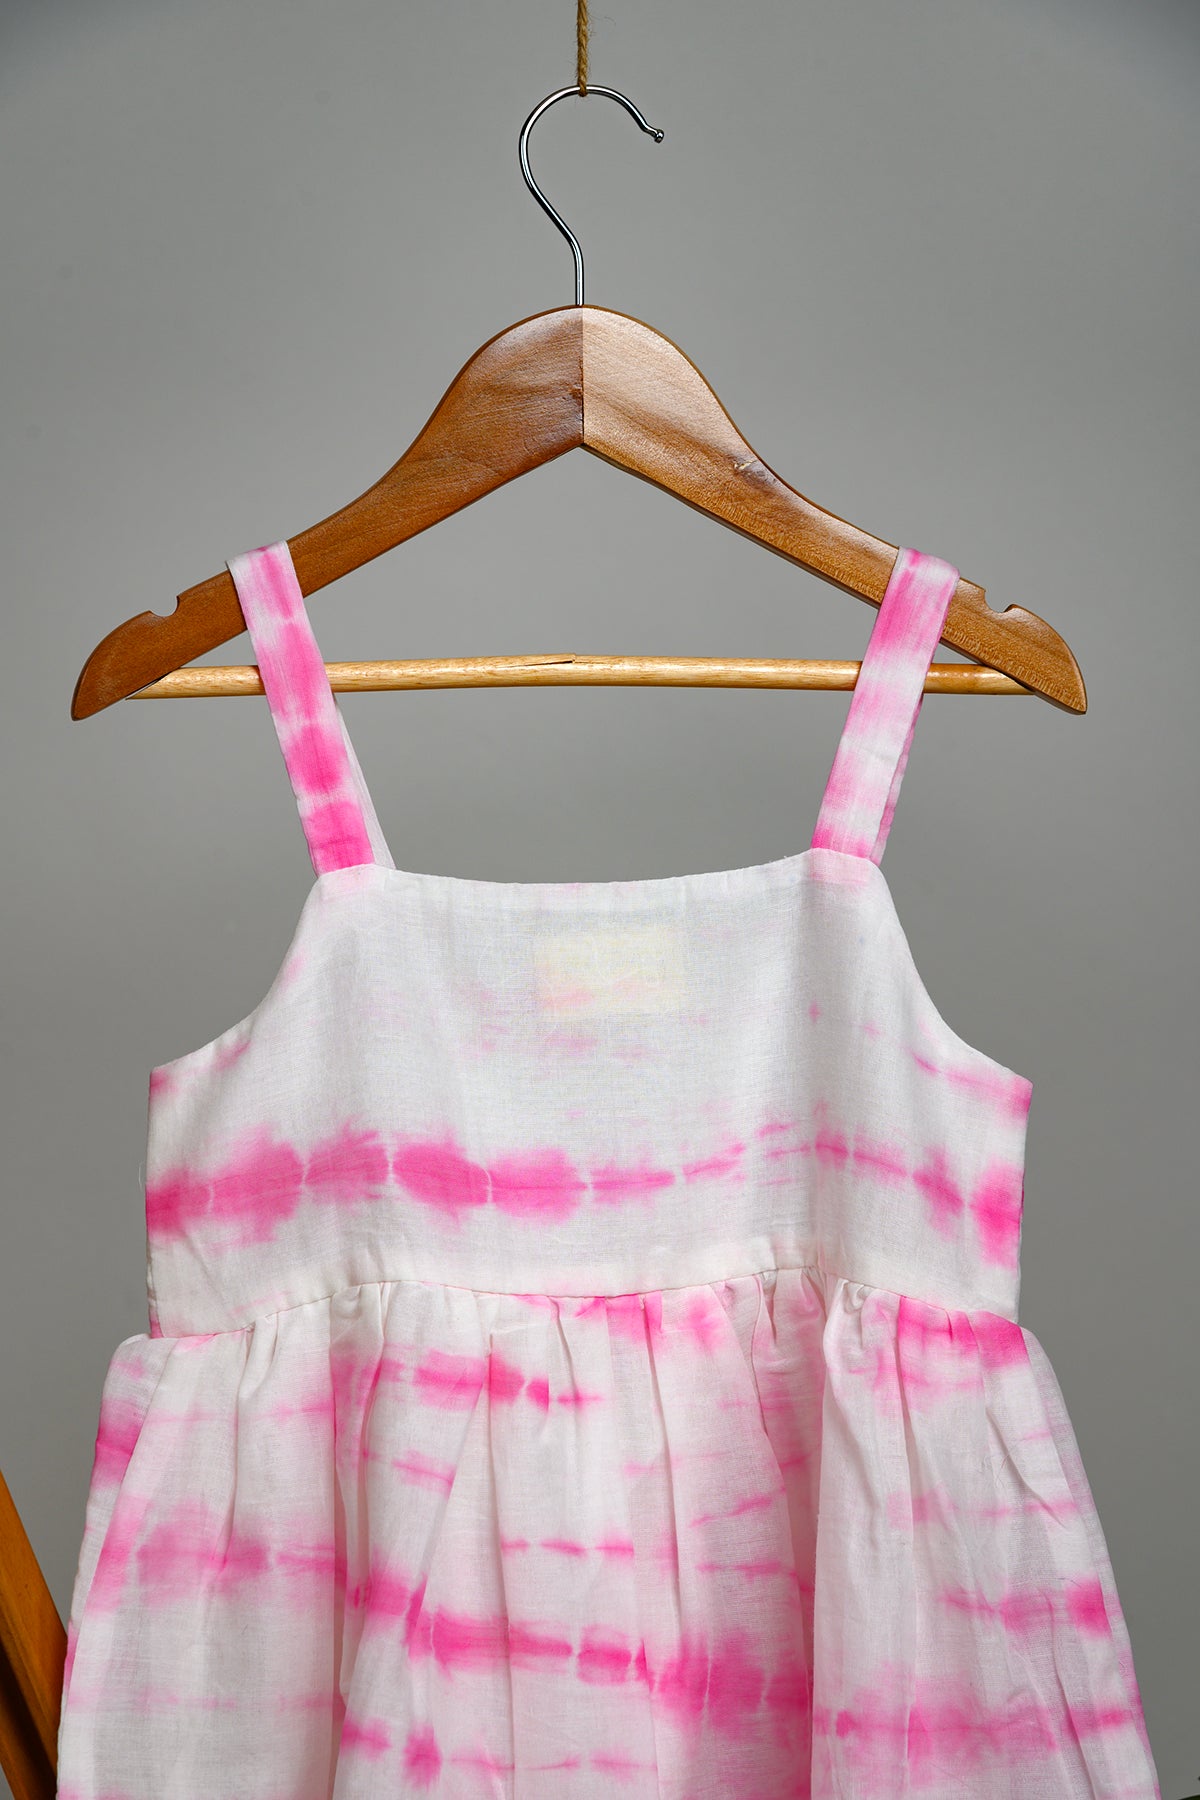 Ivy Shibori Strap Dress for Kids